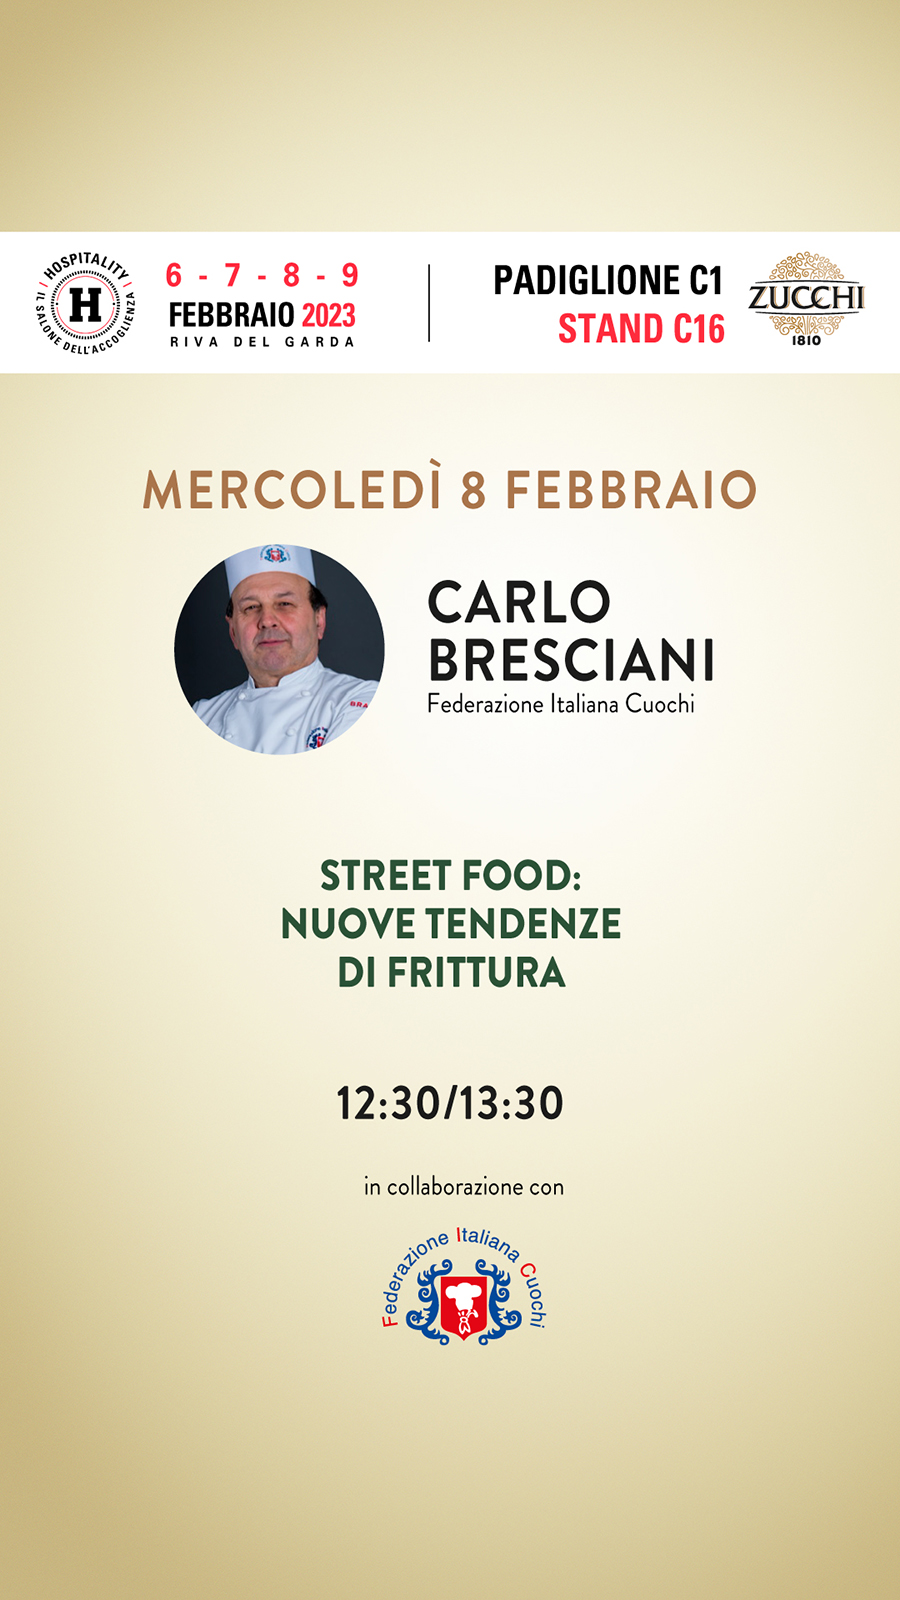 Mercoledì 8 Febbraio - Carlo Bresciani